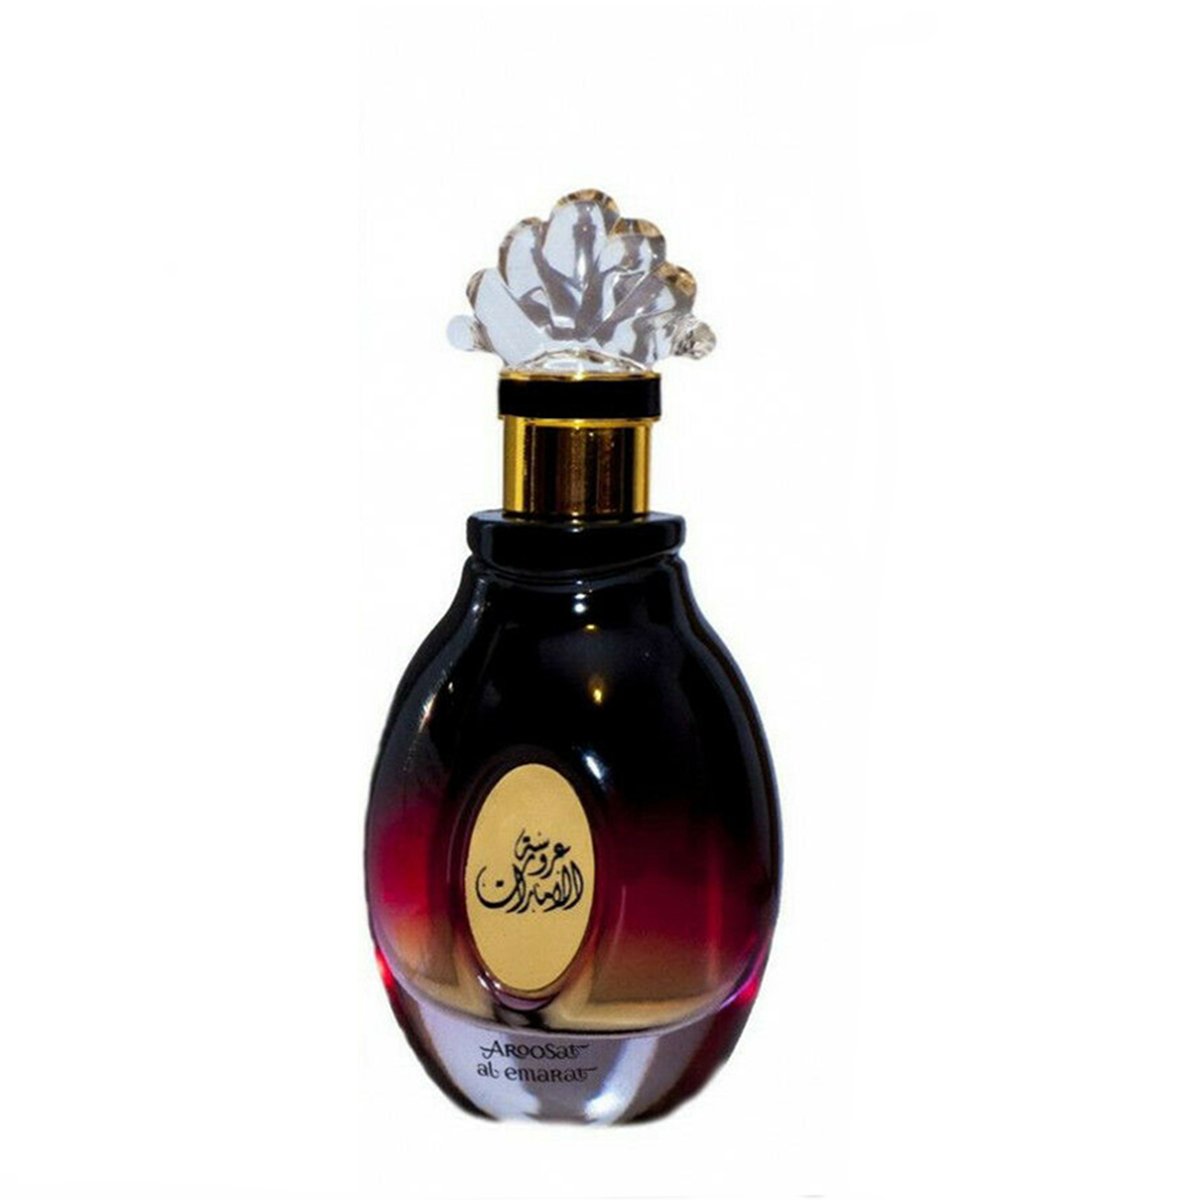 Aroosat Al Emarat Eau de Parfum 100ml Ard Al Zaafaran-Perfume Heaven